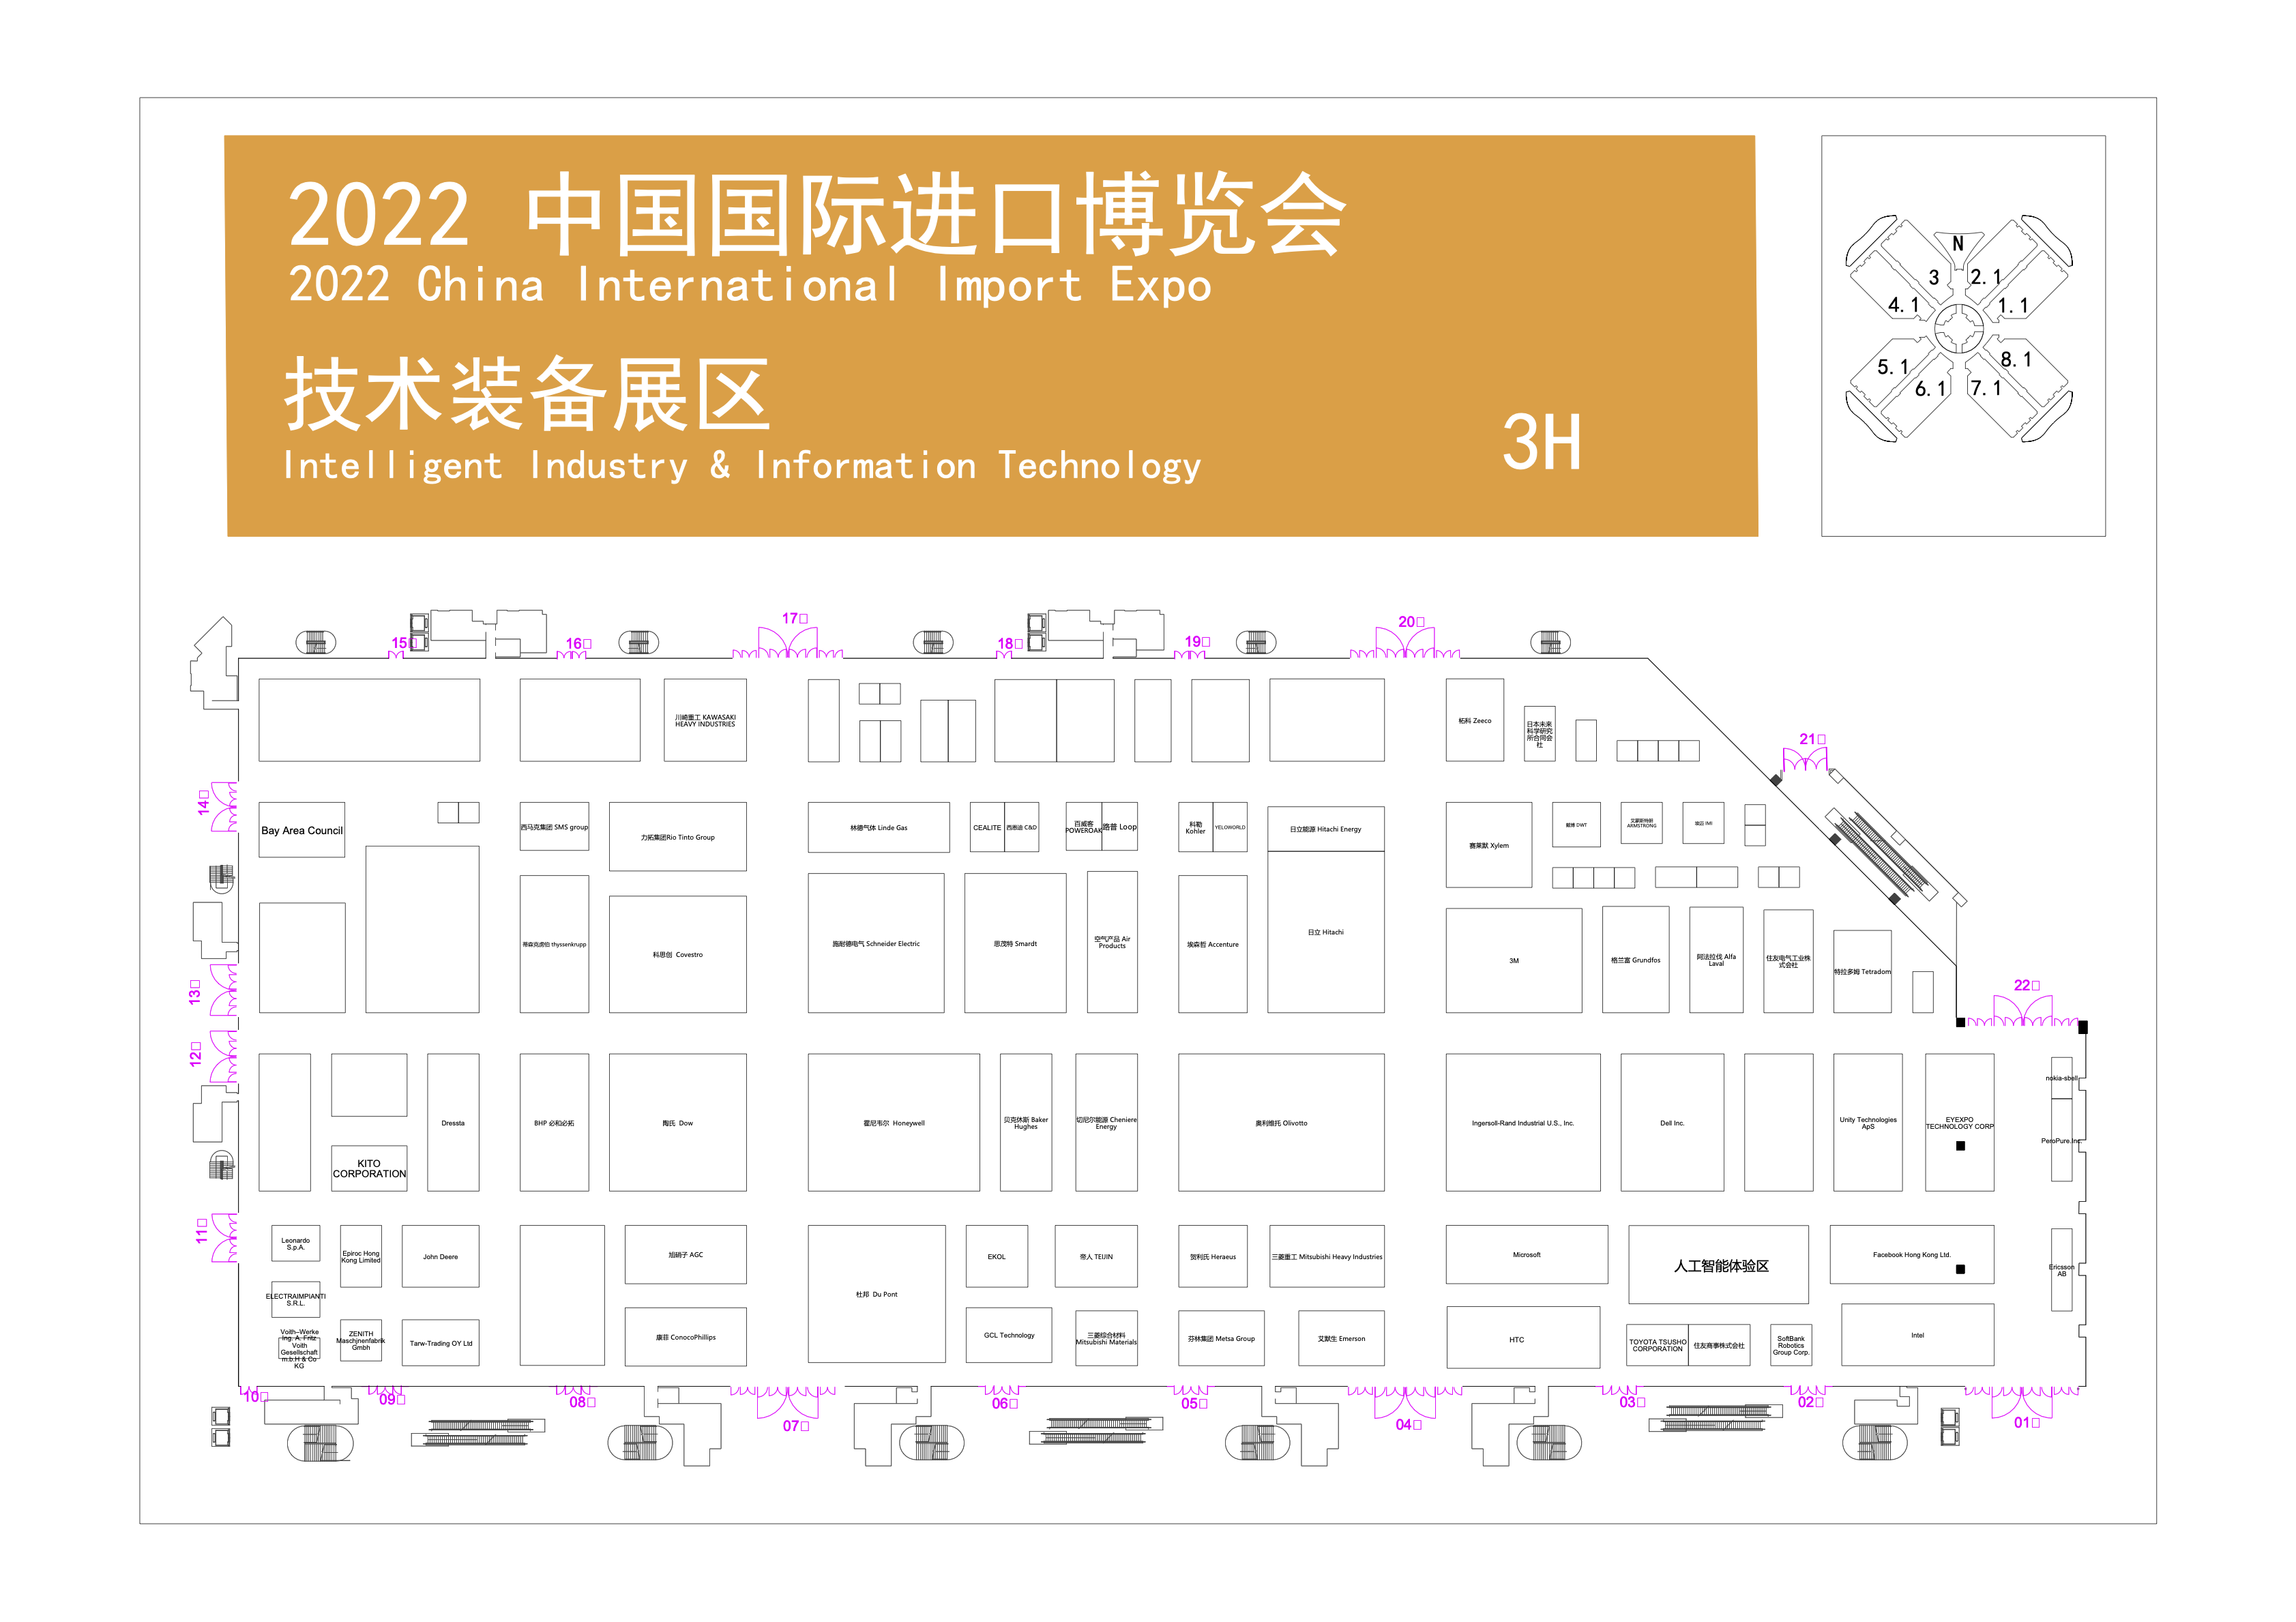 2022年第五届中国国际进口博览会展位图公布(www.kongfen.org.cn)